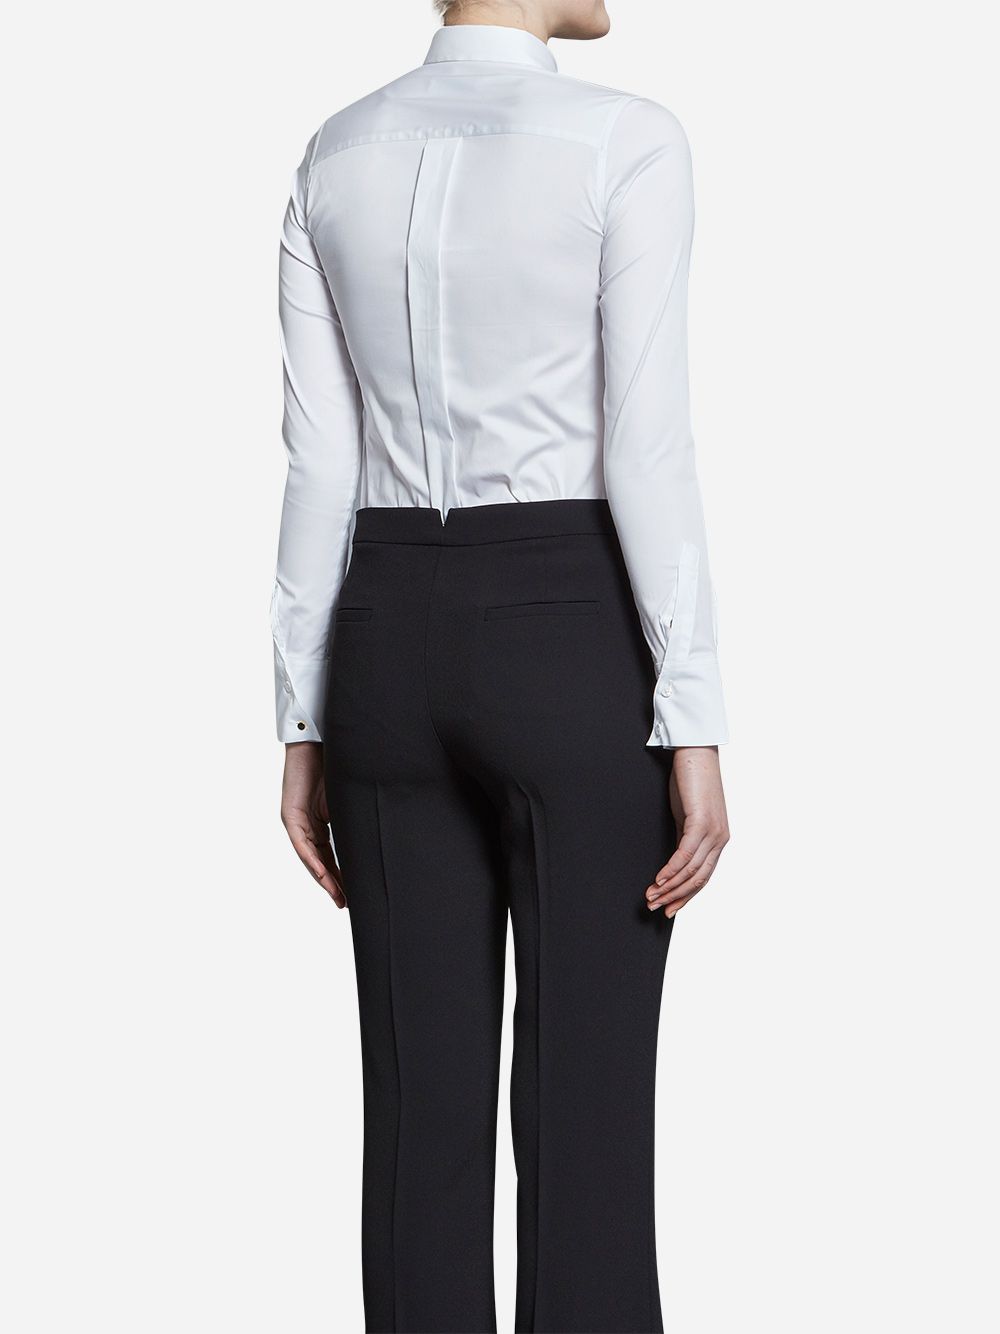 Camisa Branca Essencial 02 | A-line Clothing